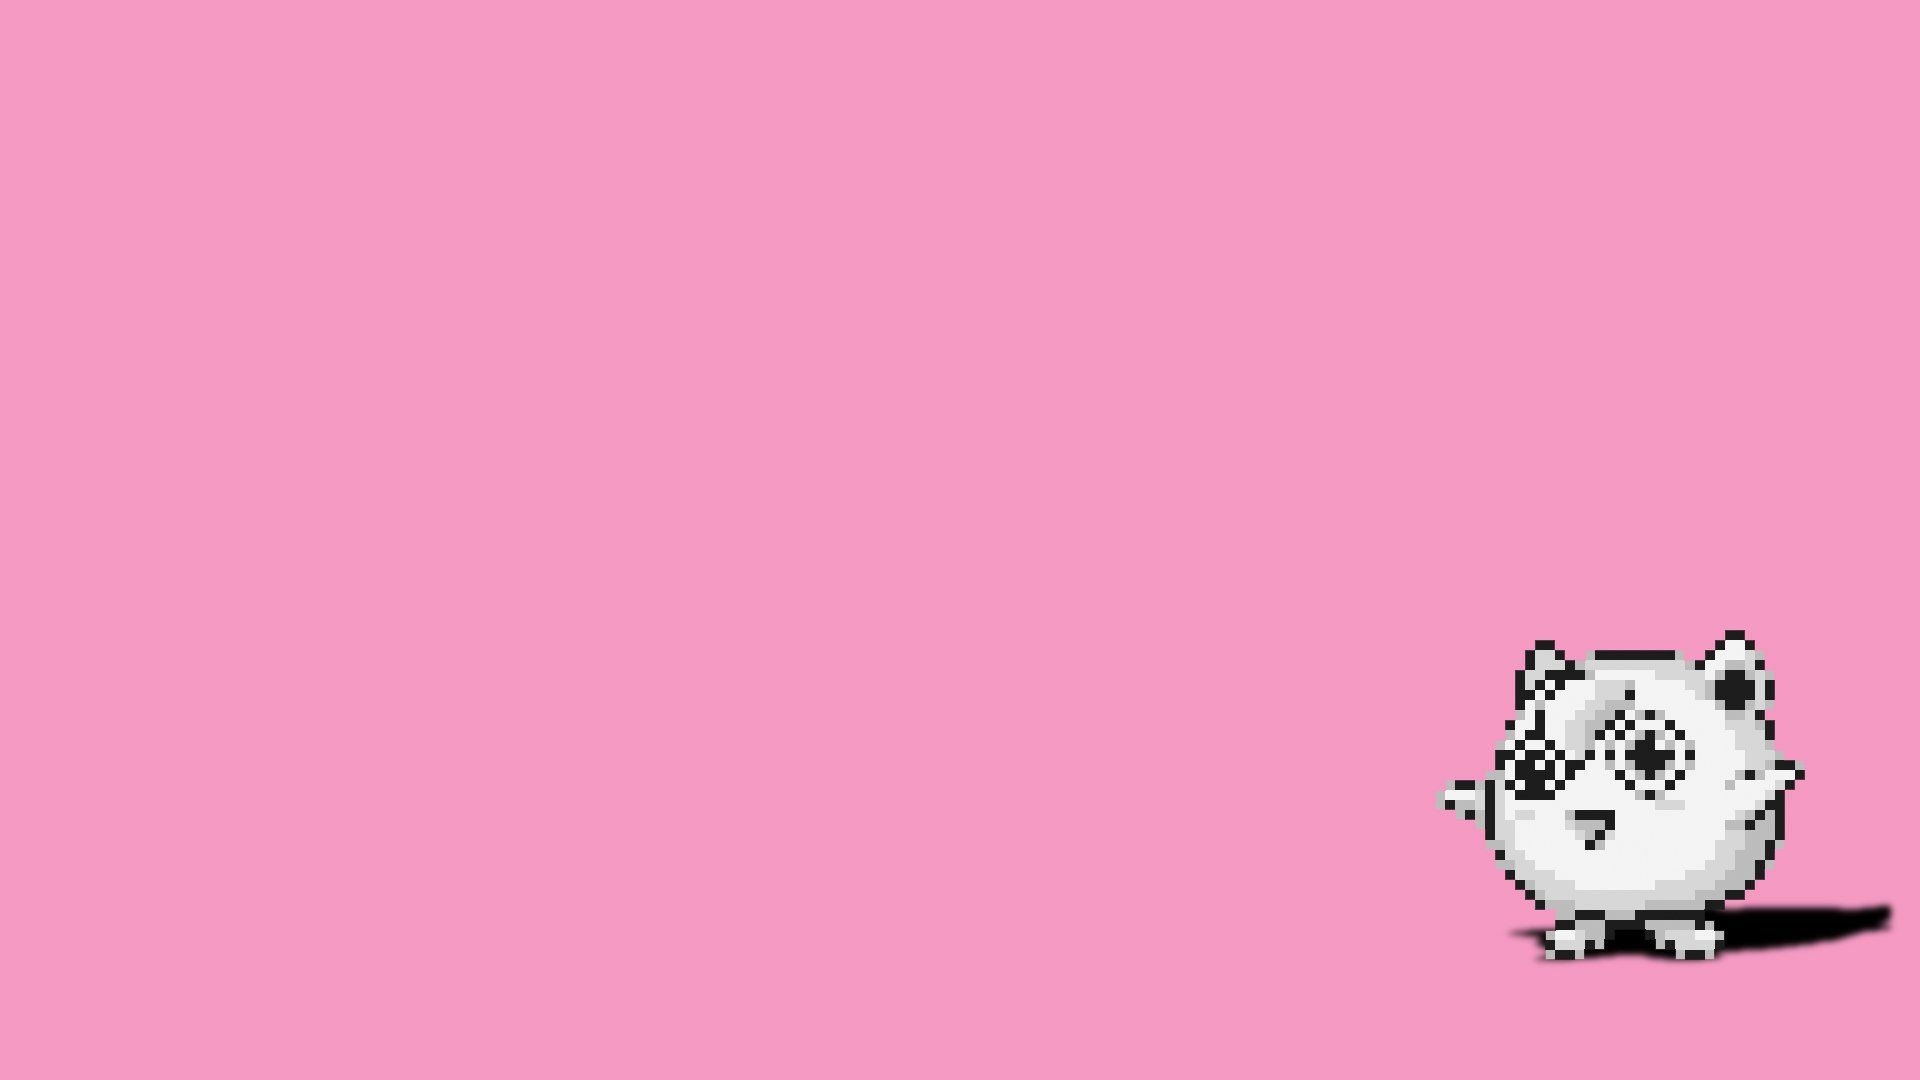 Pink Pokemon Desktop Wallpaper